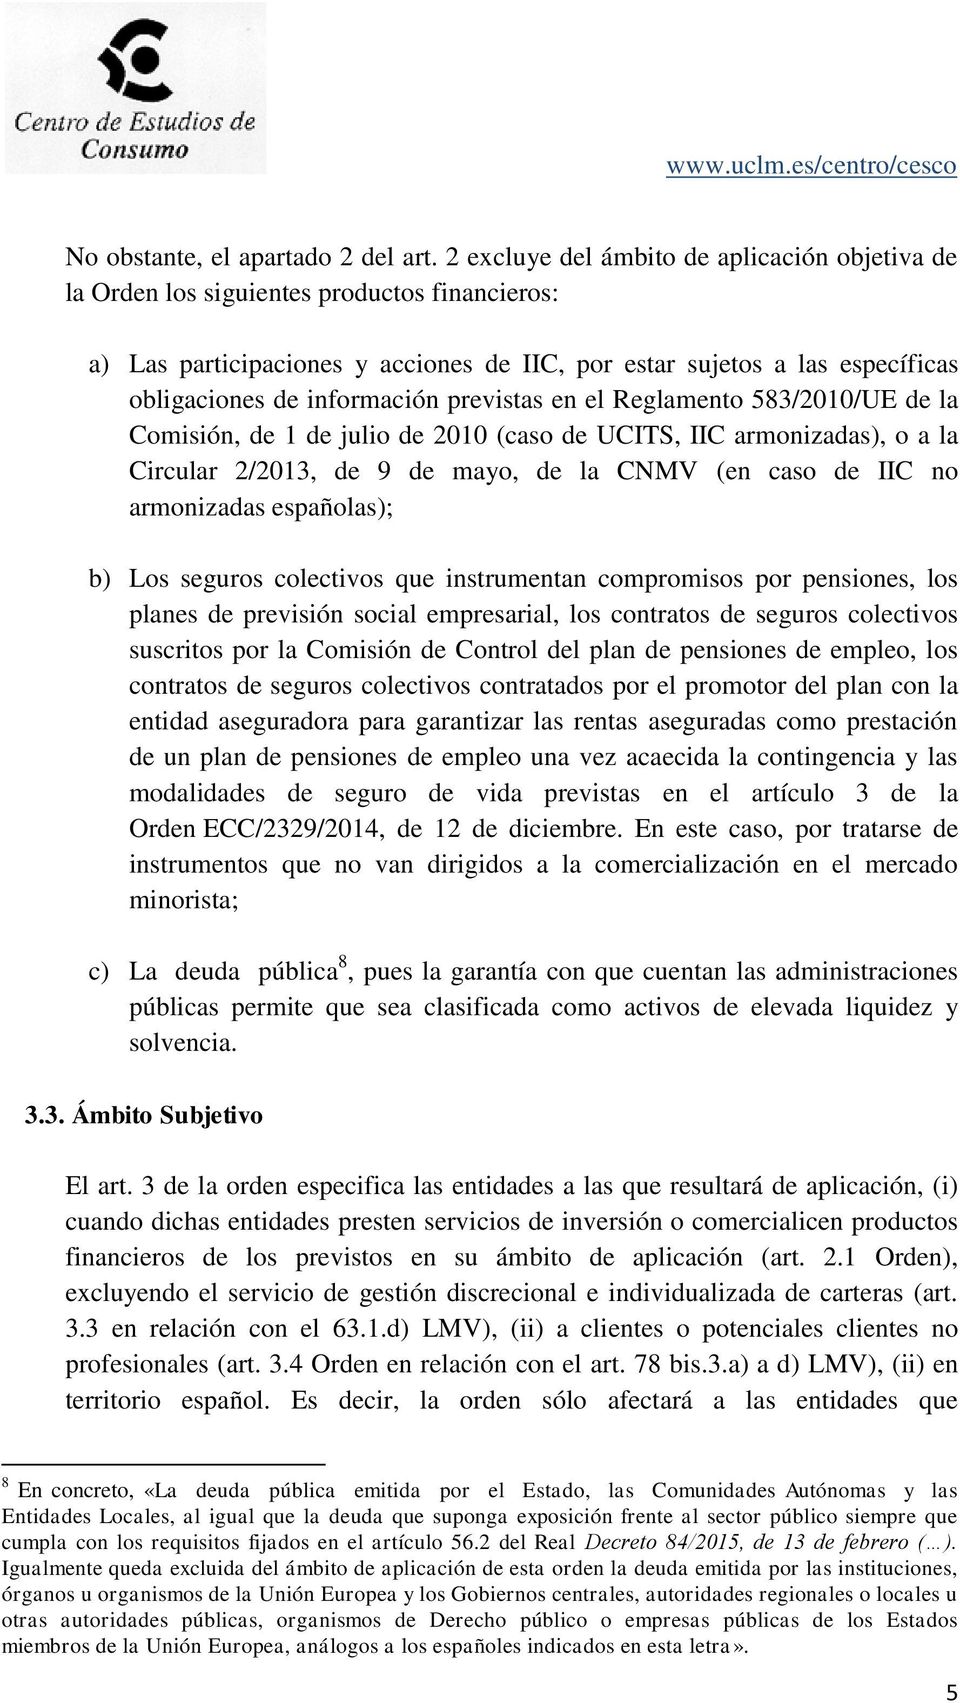 previstas en el Reglamento 583/2010/UE de la Comisión, de 1 de julio de 2010 (caso de UCITS, IIC armonizadas), o a la Circular 2/2013, de 9 de mayo, de la CNMV (en caso de IIC no armonizadas